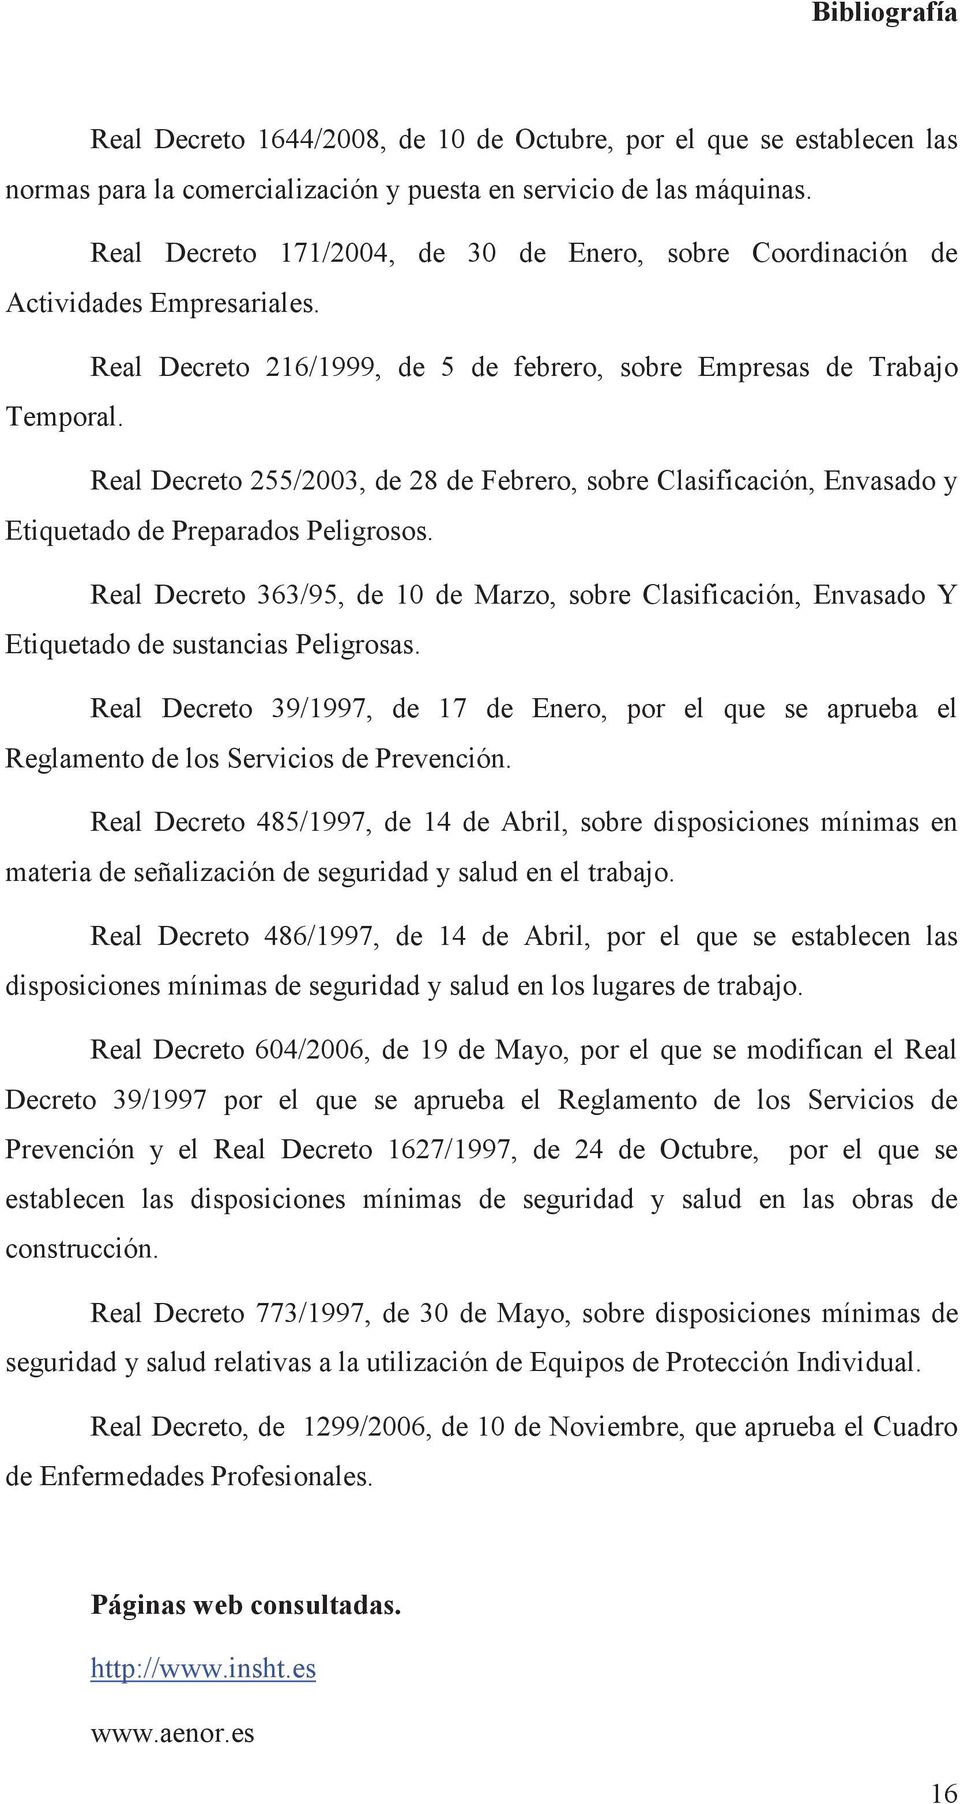 Real Decreto 255/2003, de 28 de Febrero, sobre Clasificación, Envasado y Etiquetado de Preparados Peligrosos.